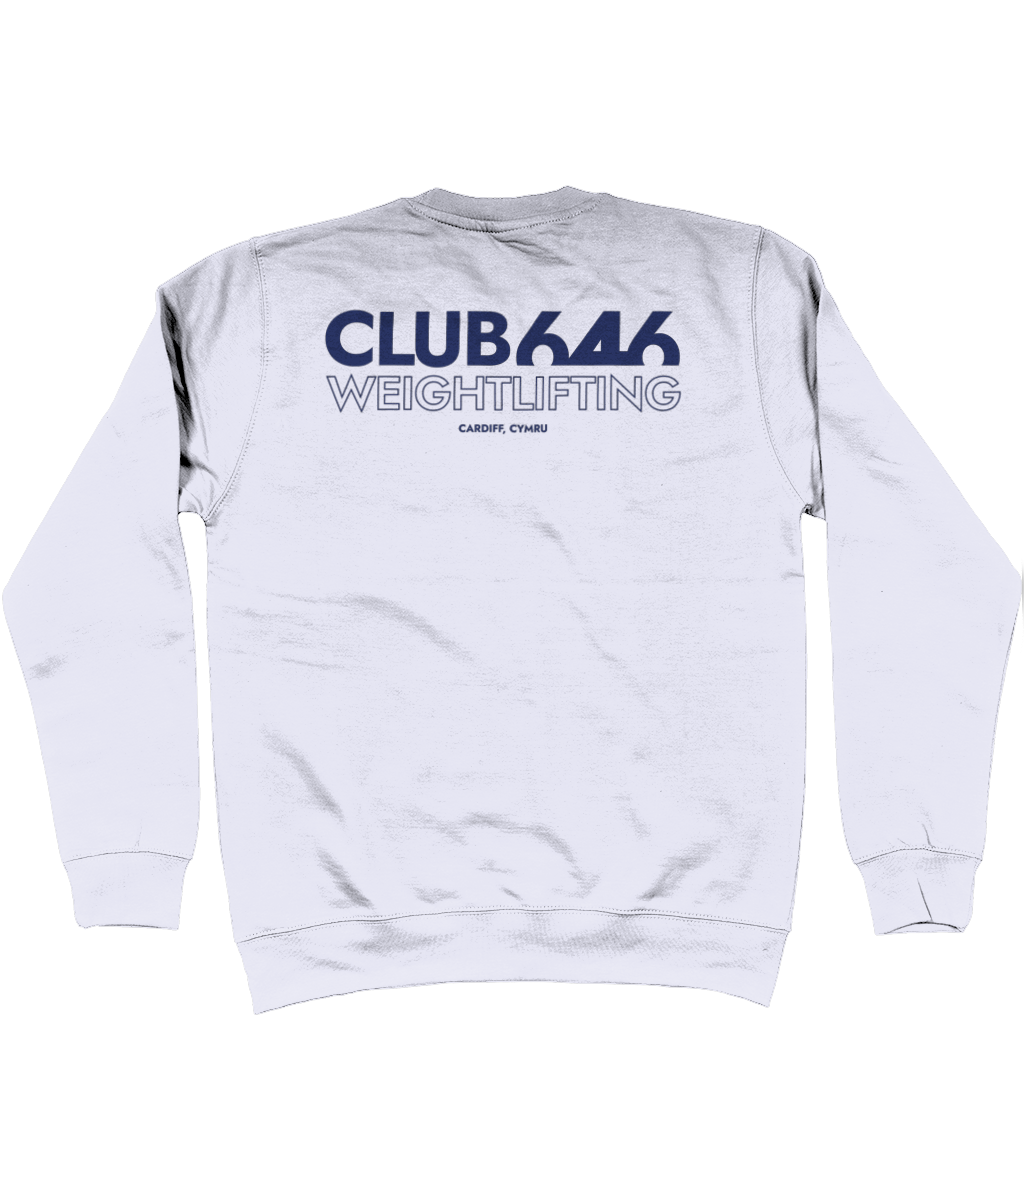 Club 646 (blue) jumper